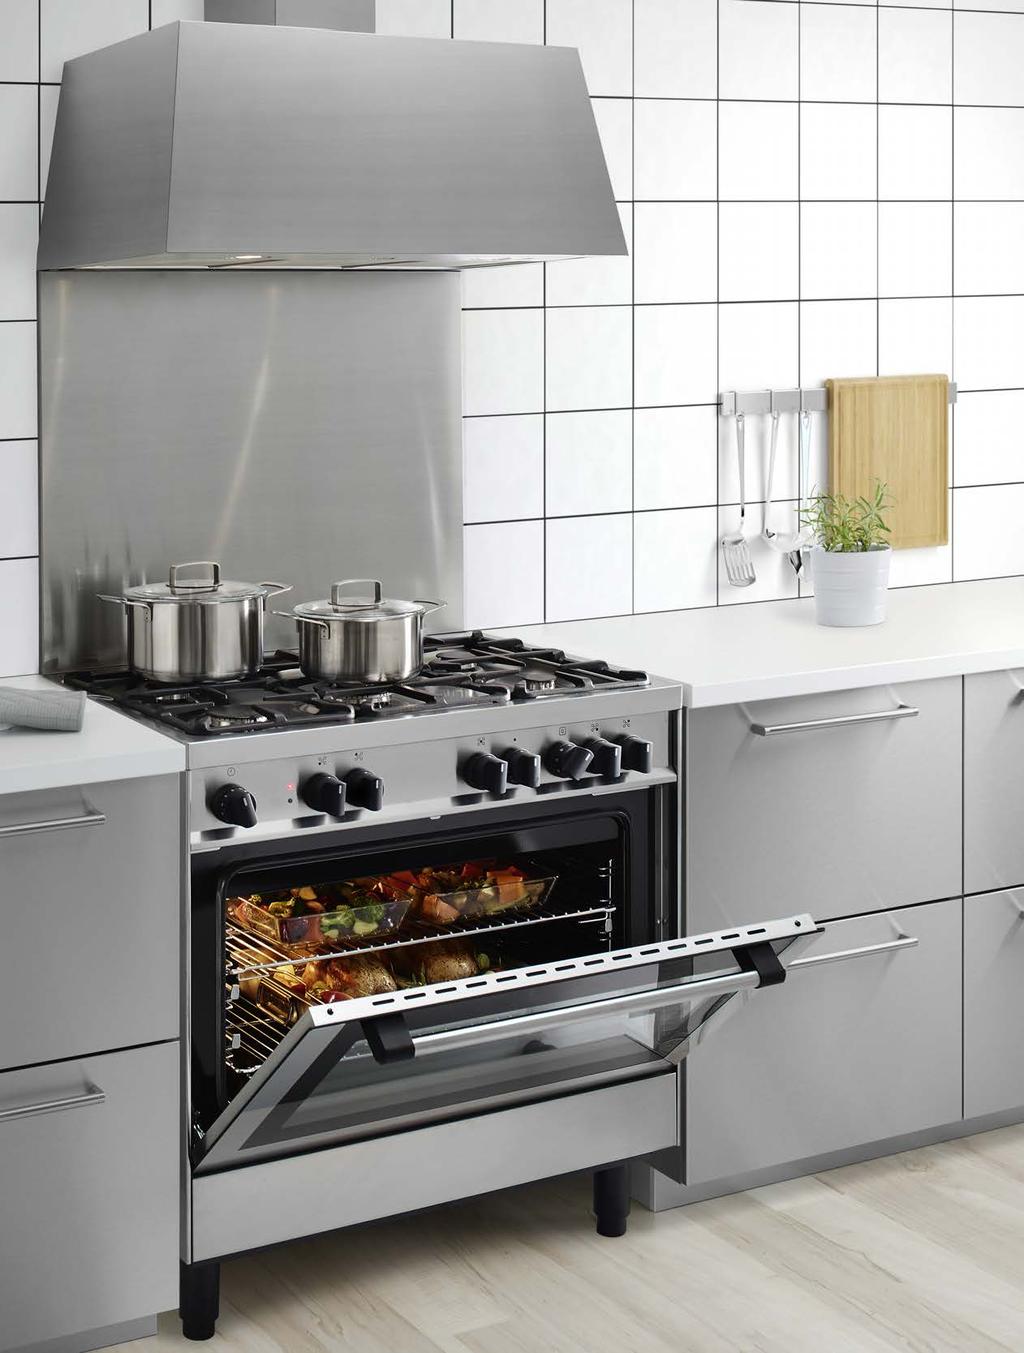 CUCINE Le nostre cucine freestanding sono una soluzione pratica per avere un piano cottura di qualità unito a un forno.